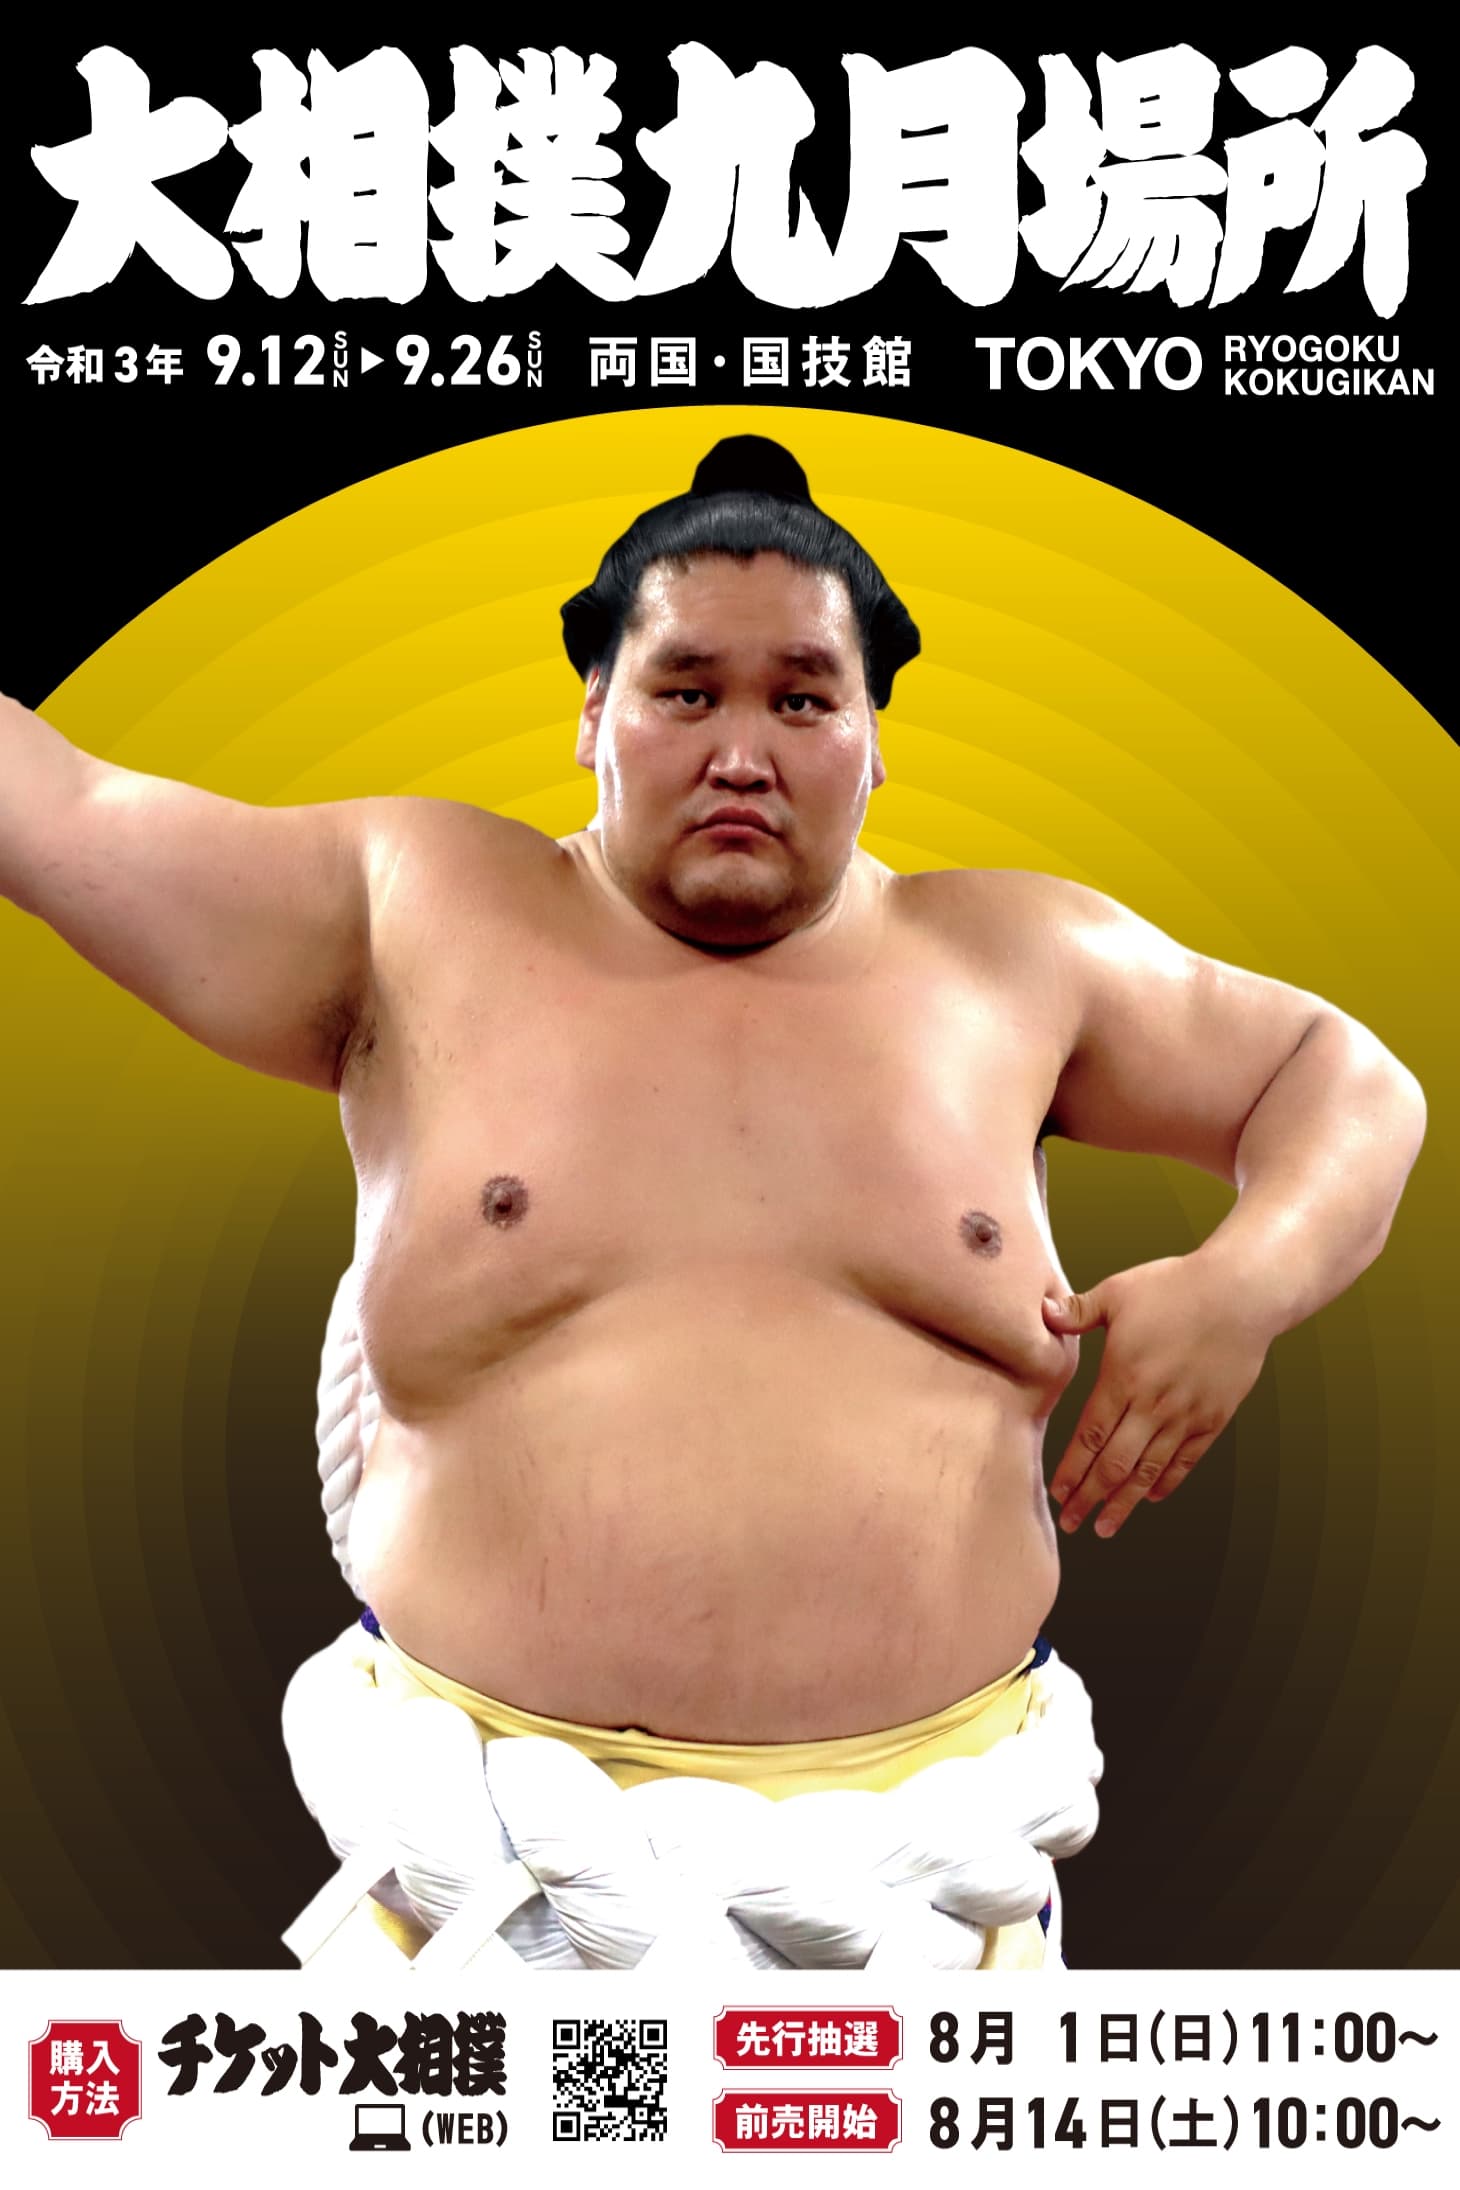 Grand Sumo Season 7